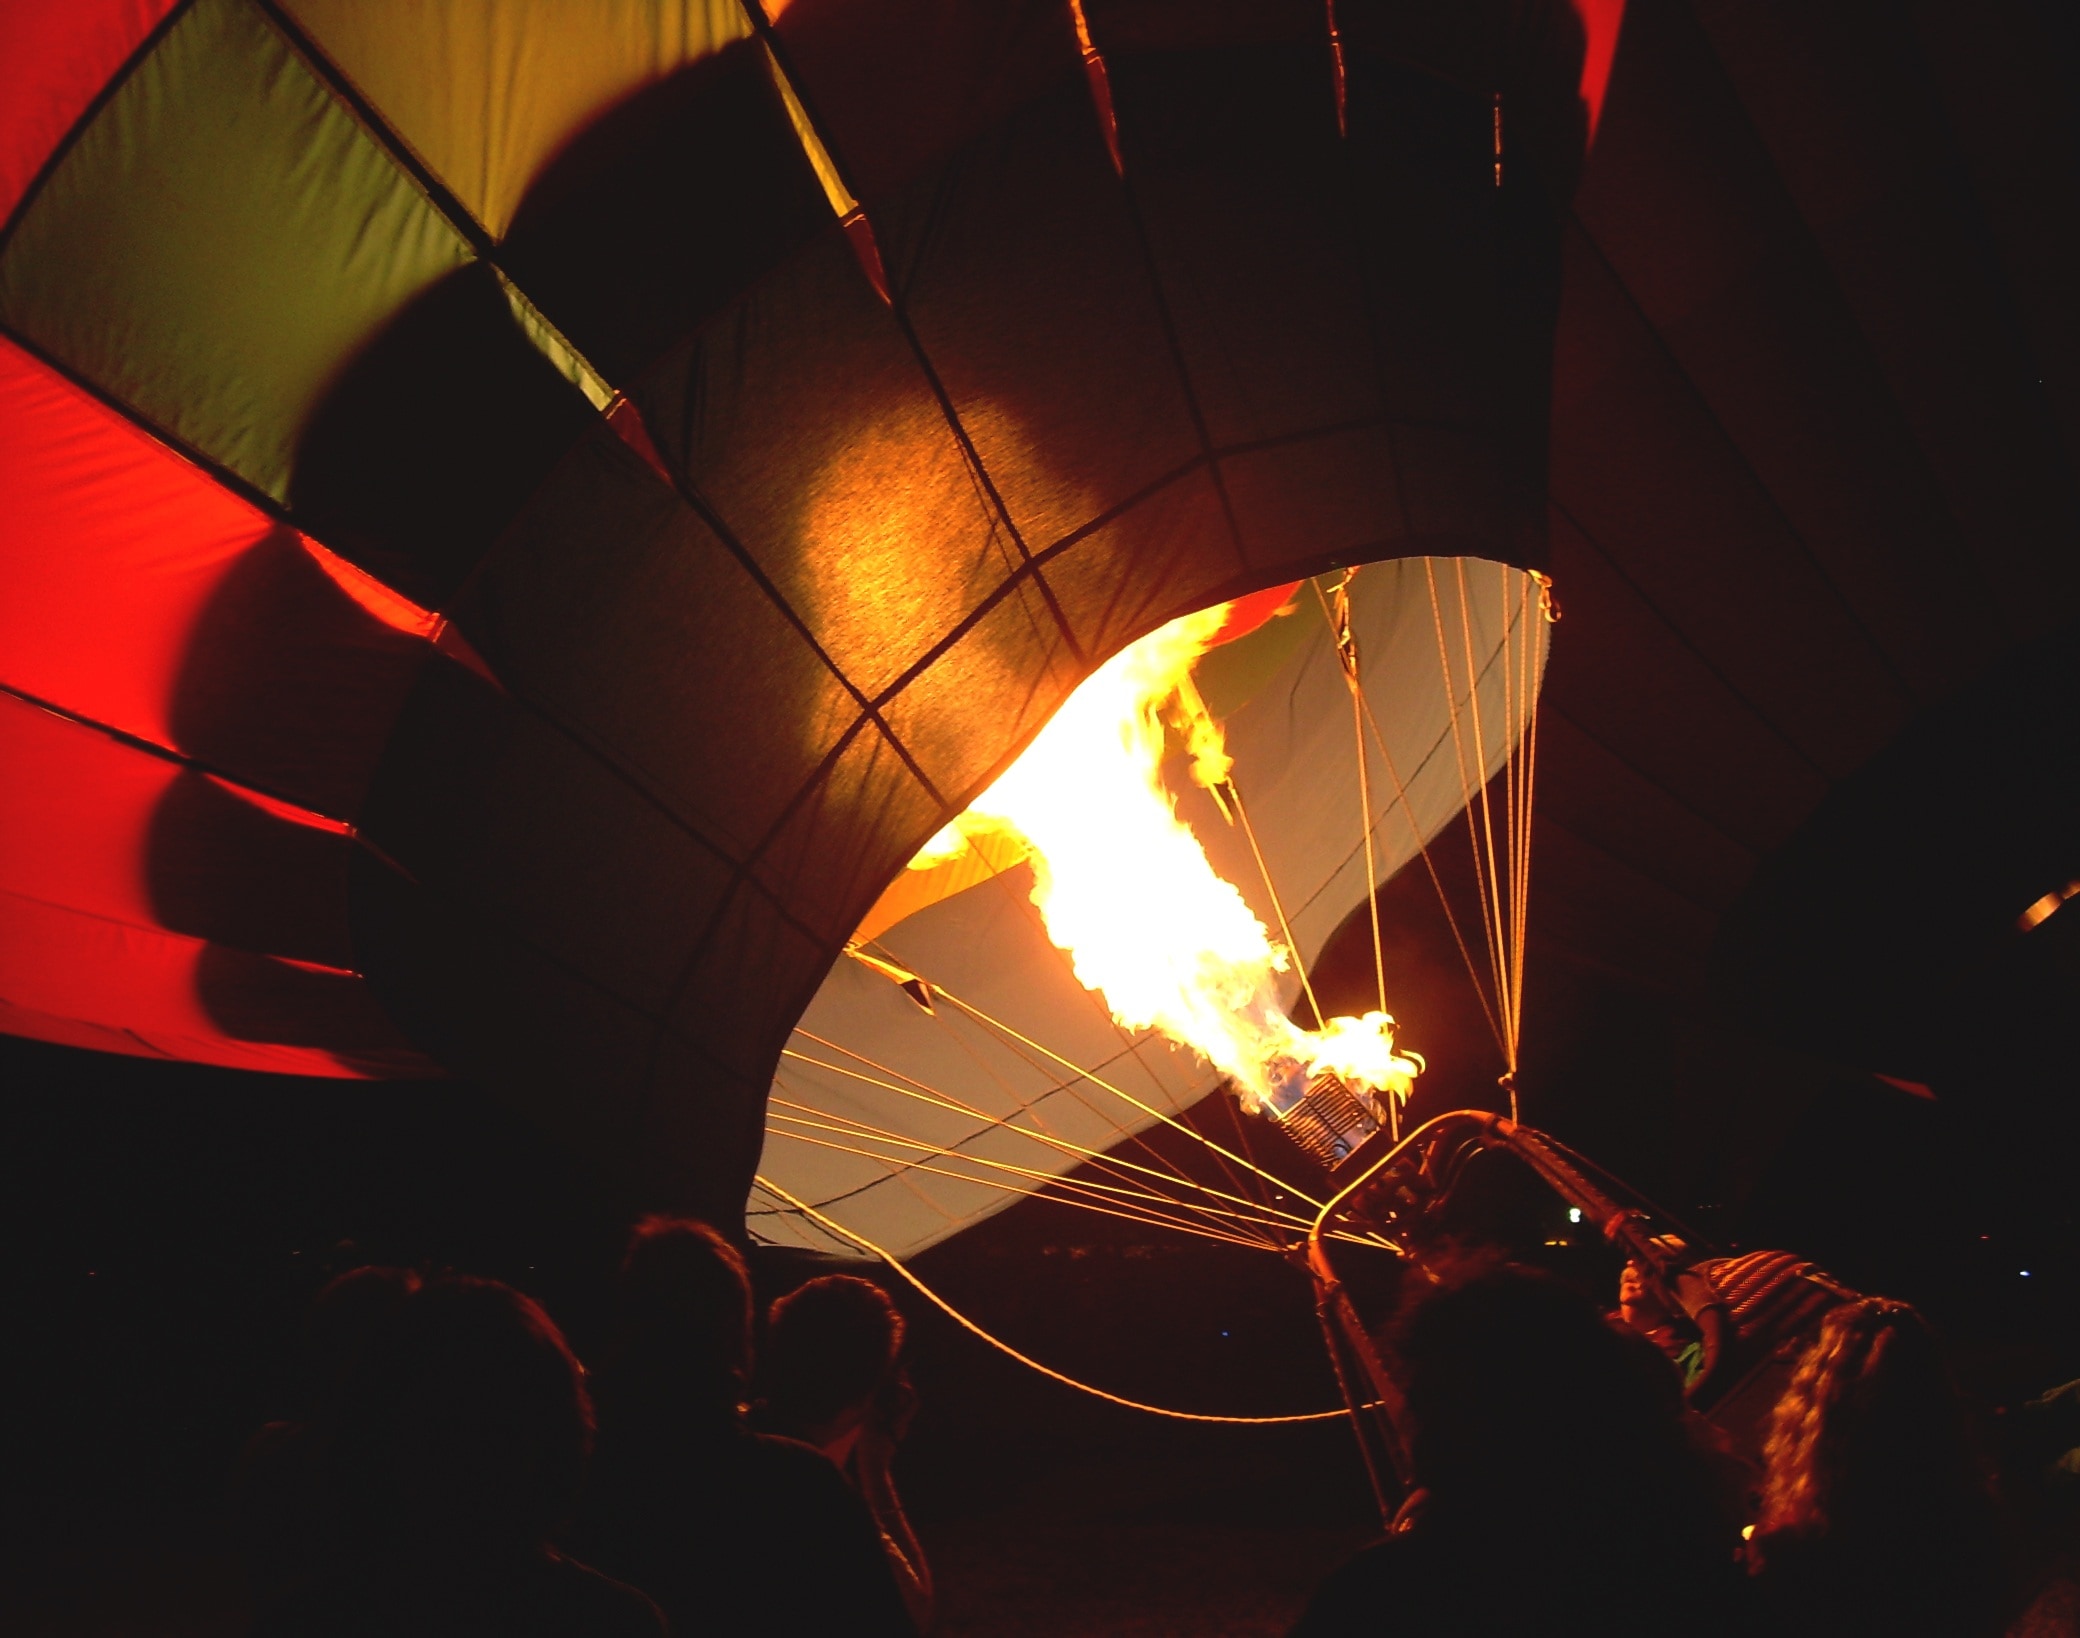 Hot Air Balloon, Dawn, Fire, Balloon, flame, heat - temperature